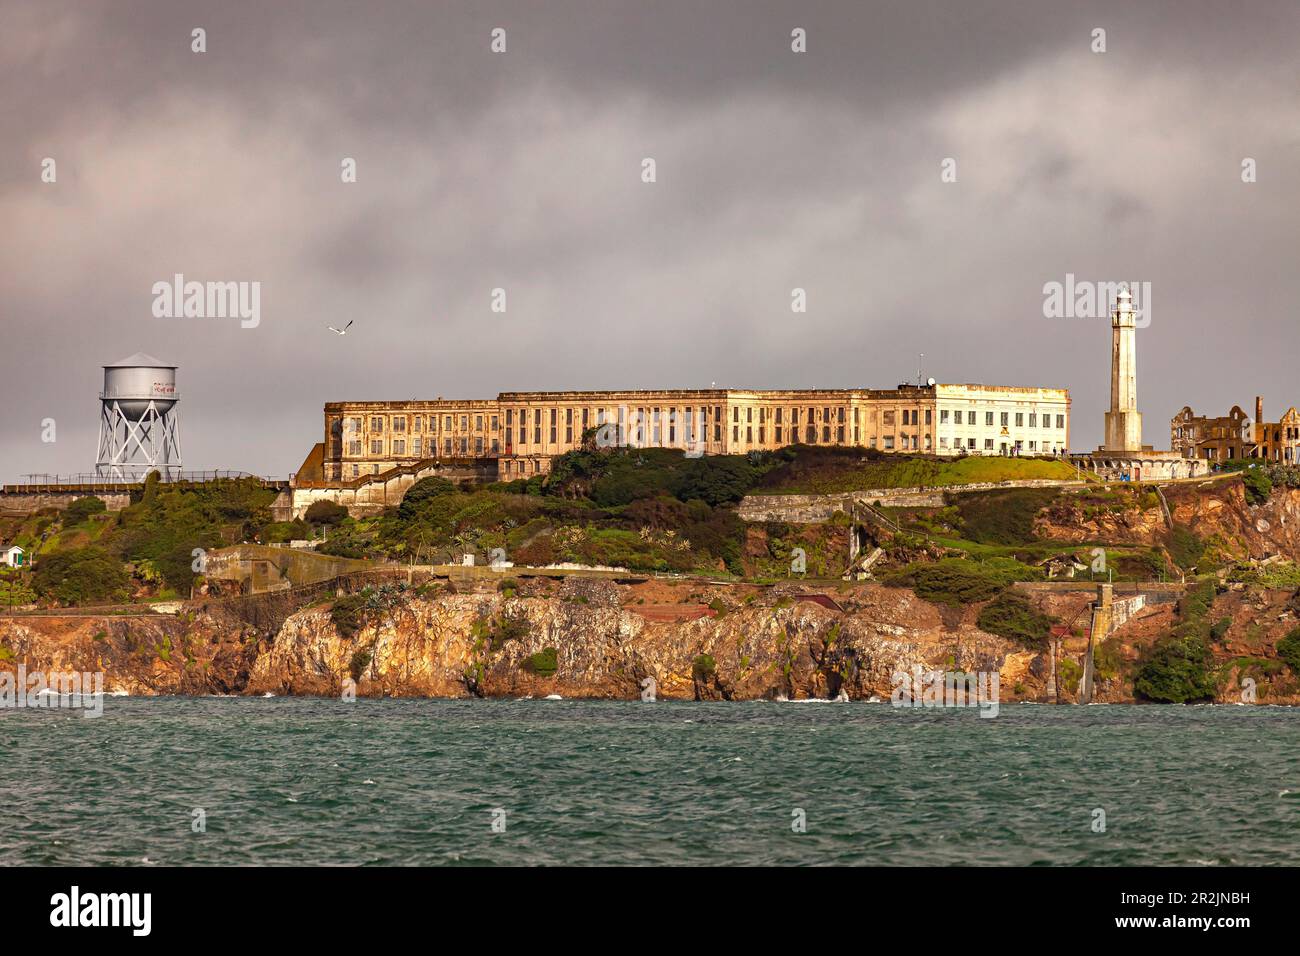 Das ehemalige Gefängnis auf Alcatraz Island, San Francisco, Kalifornien, Vereinigte Staaten von Amerika, USA Stockfoto